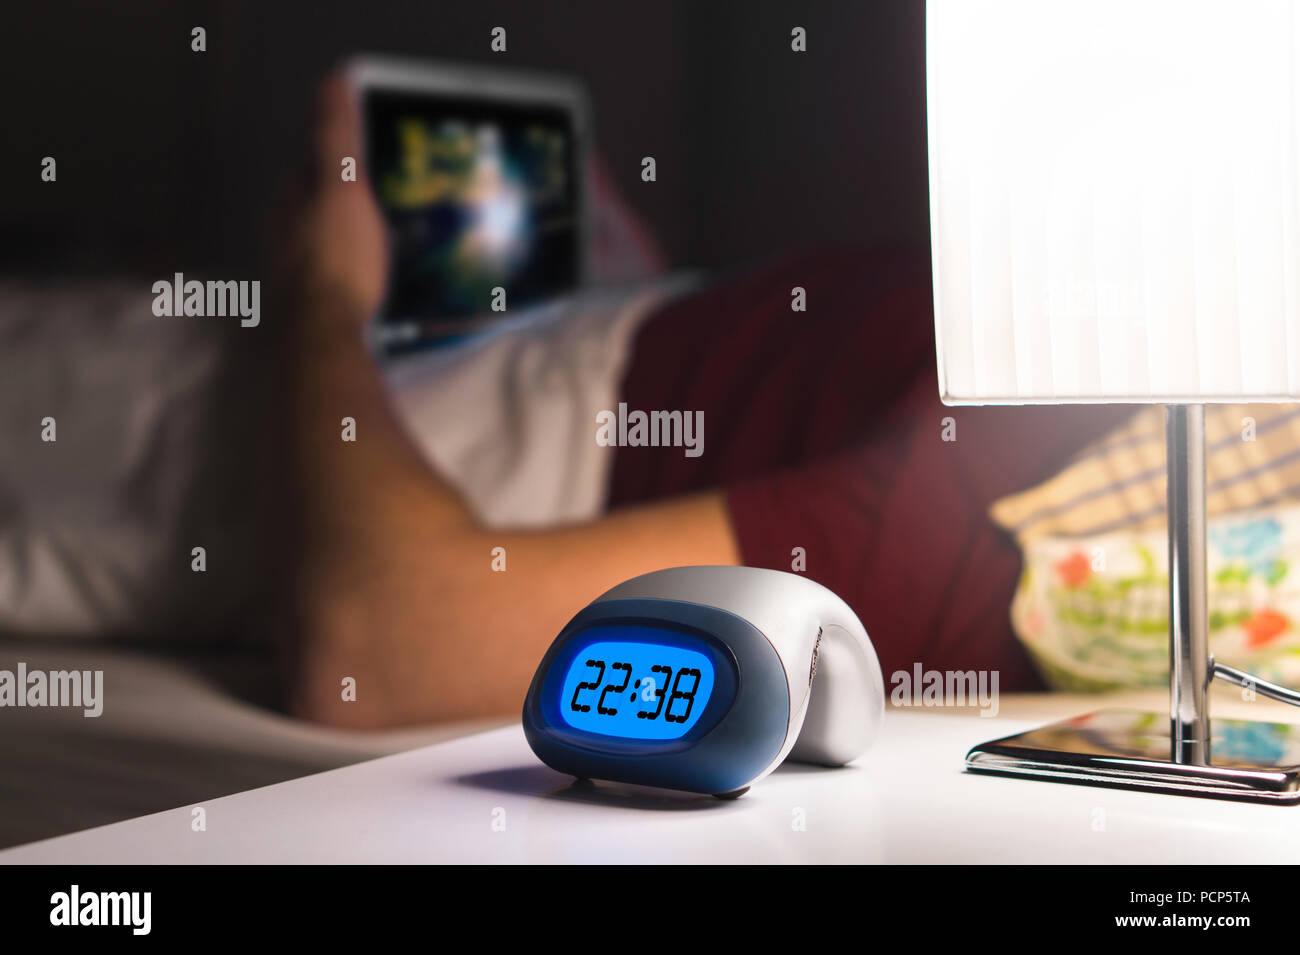 Man using tablet or watching movie or series stream online in bed before falling asleep. Digital alarm clock on nightstand in bedroom. Stock Photo